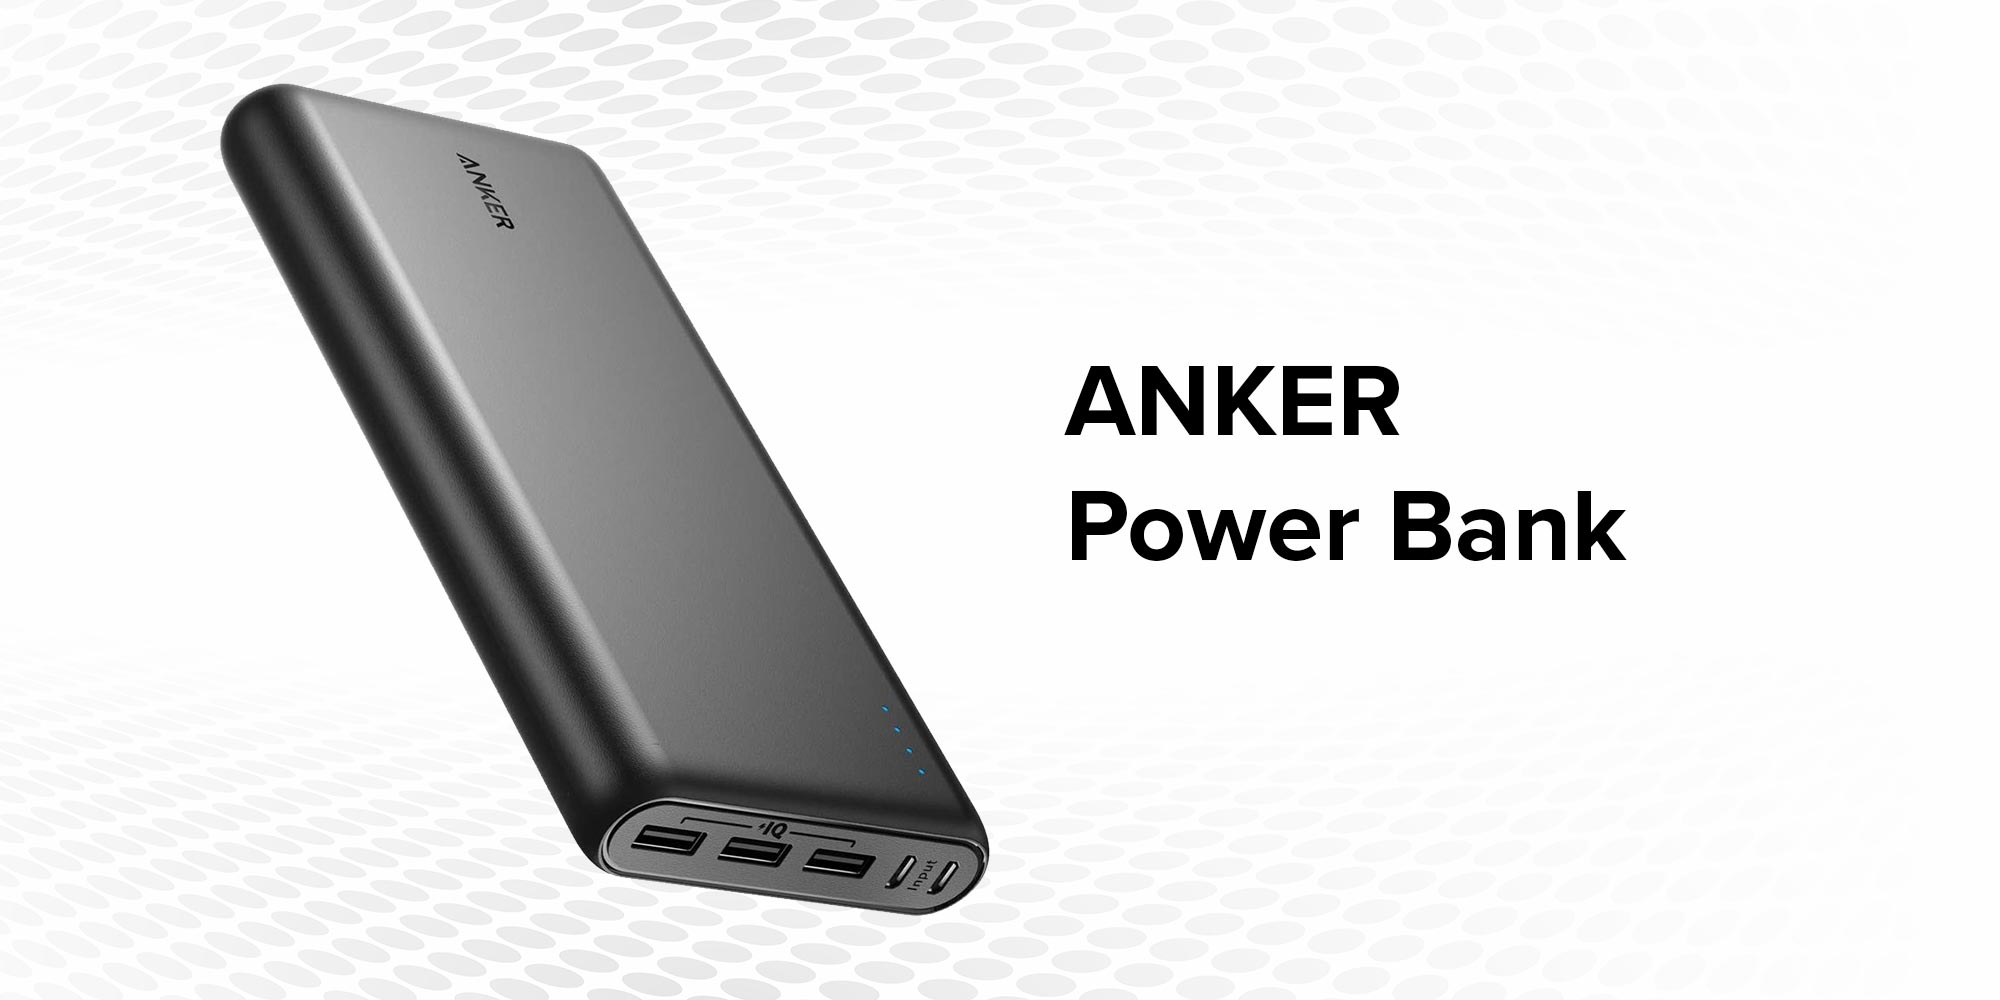 Anker 26800.0 mAh Power Bank Black Egypt